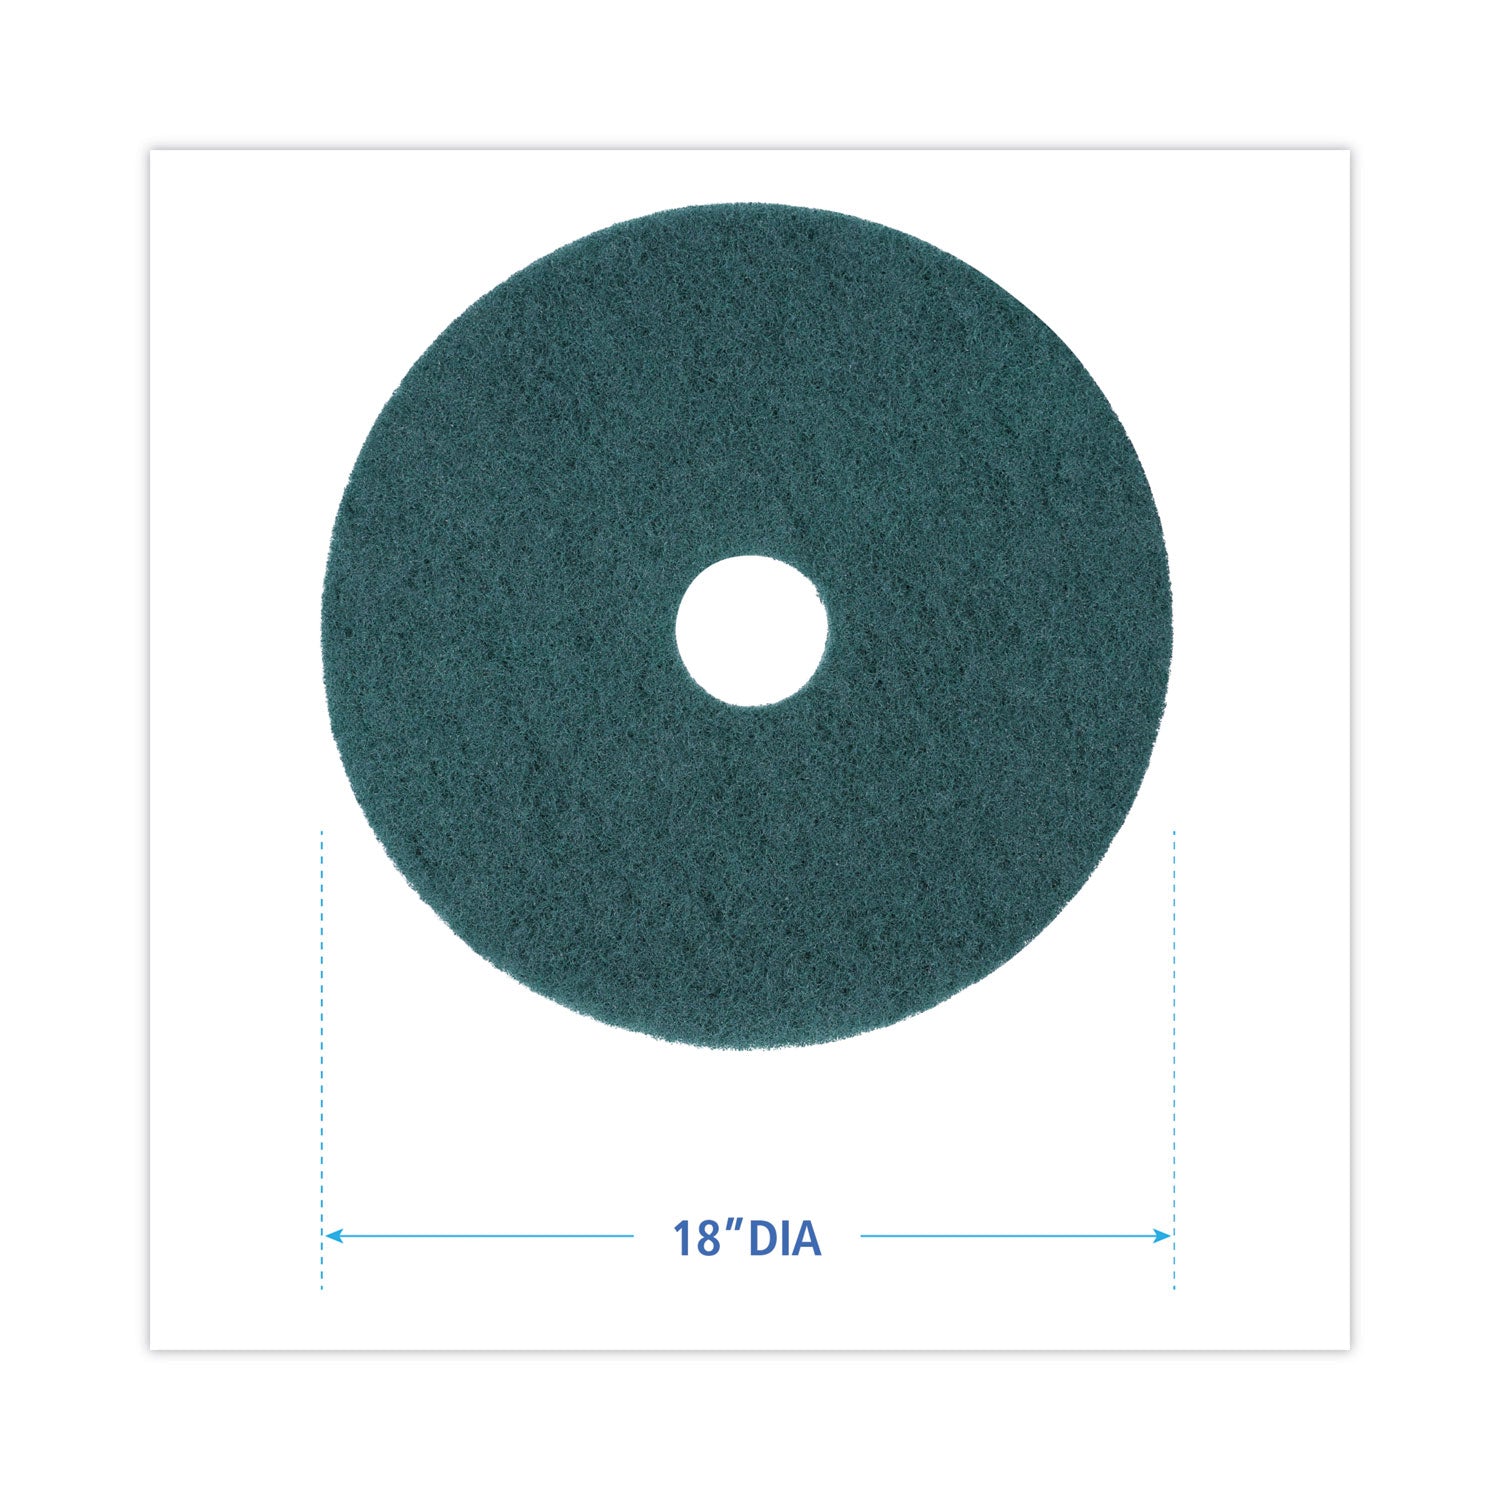 heavy-duty-scrubbing-floor-pads-18-diameter-green-5-carton_bwk4018gre - 2